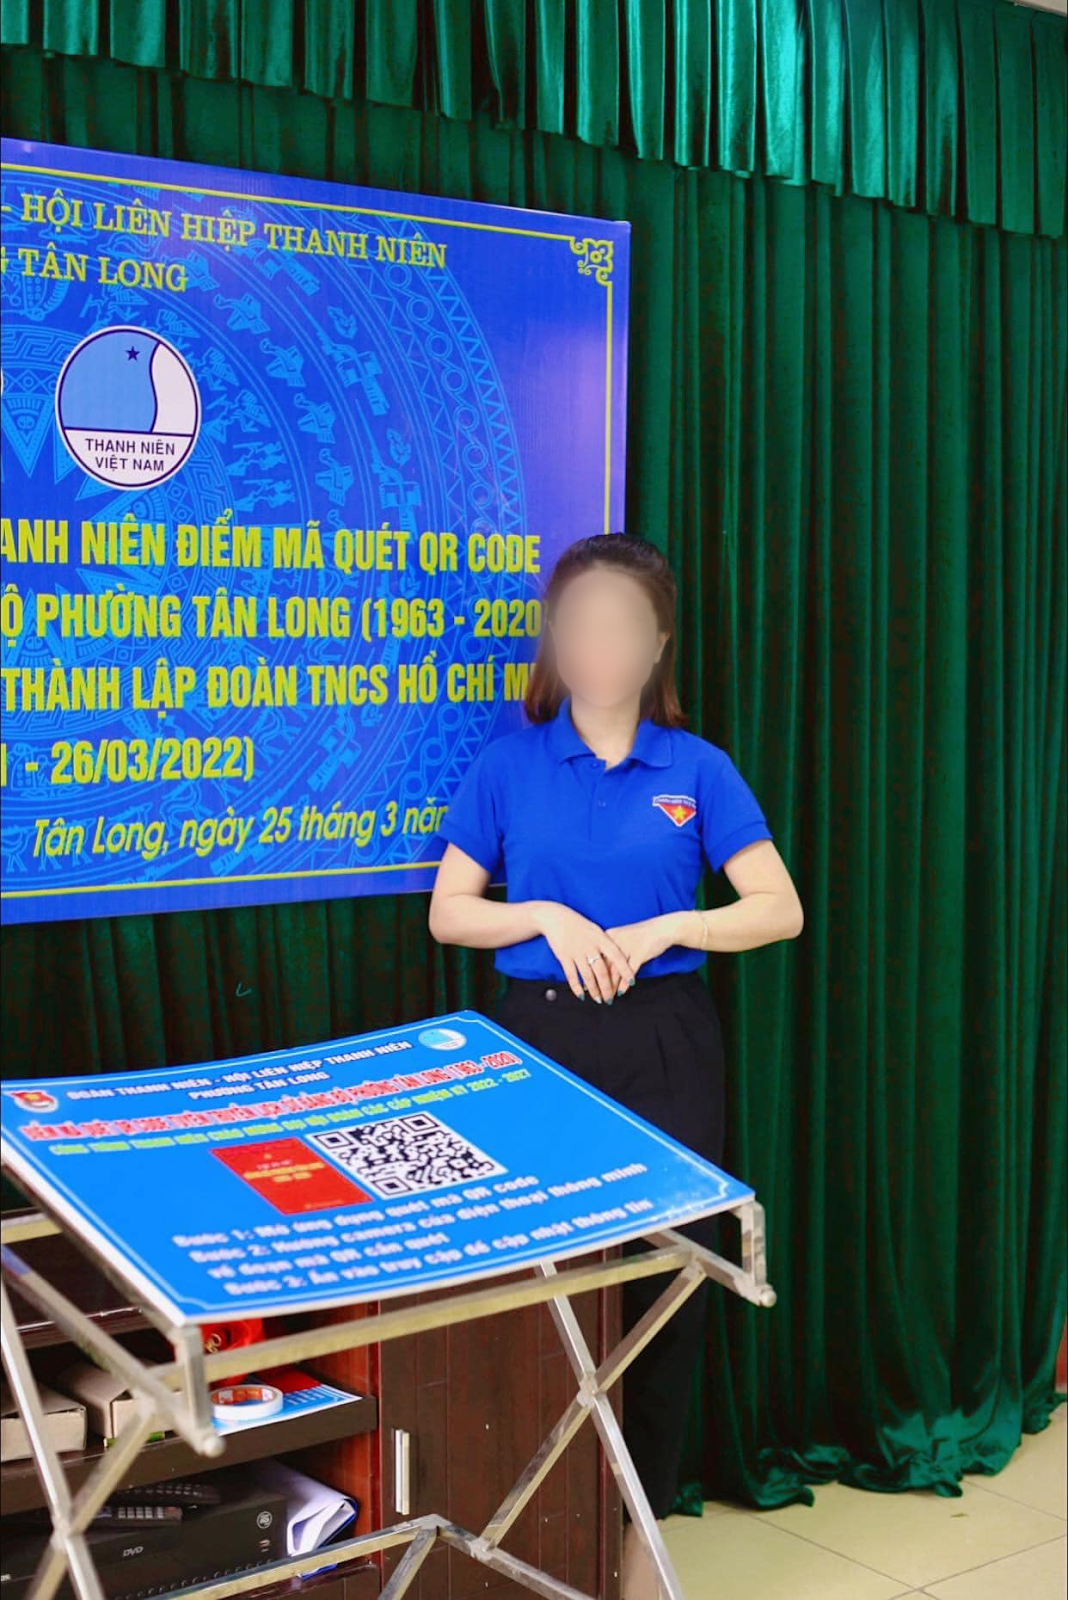 Xác nhận danh tính cặp đôi vụ rơi tầng 11 chung cư ở Thái Nguyên: Cán bộ CSGT và Phó bí thư Đoàn